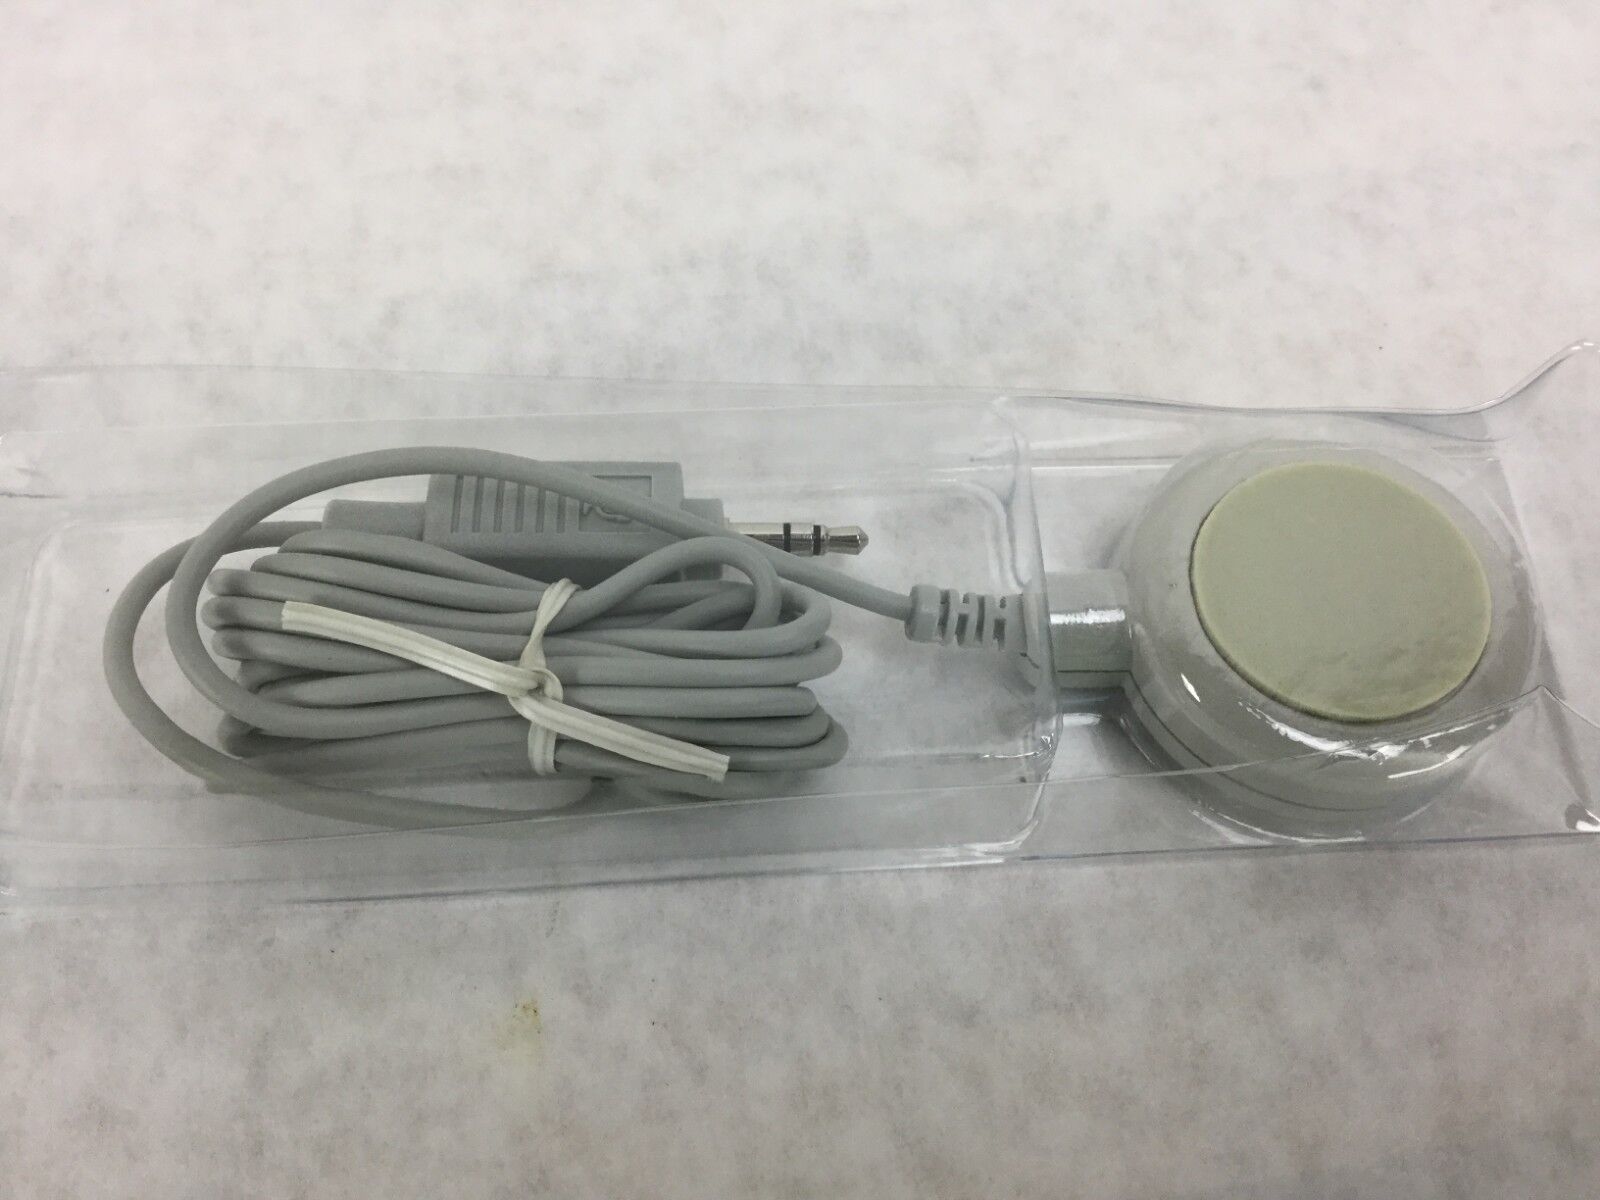 Apple Microphone  590-0617-A   New in Original Box